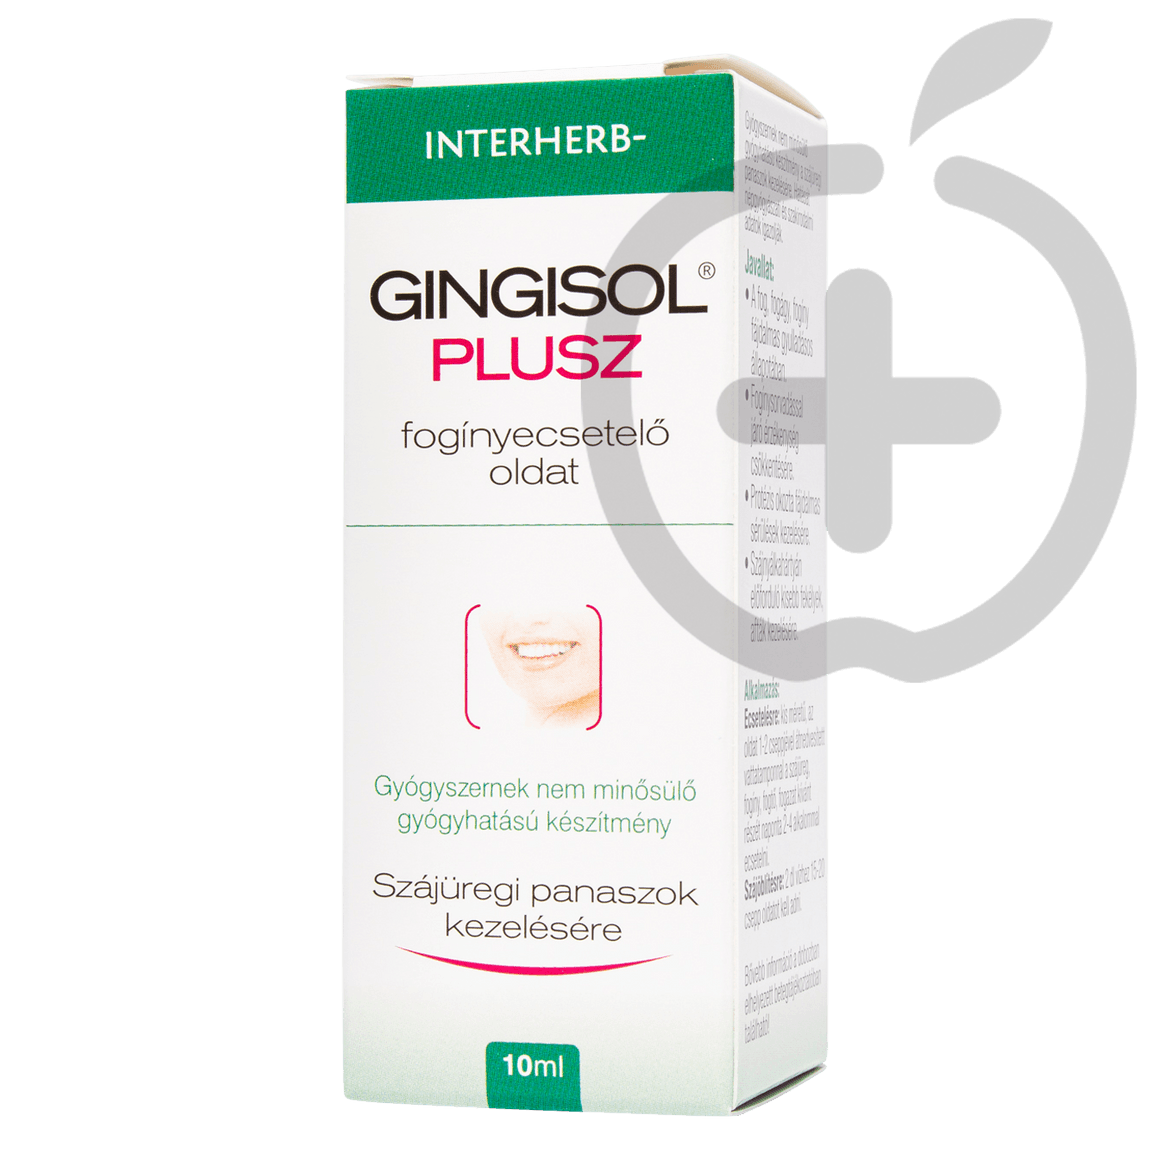 Gingisol Plusz fogínyecsetelő oldat